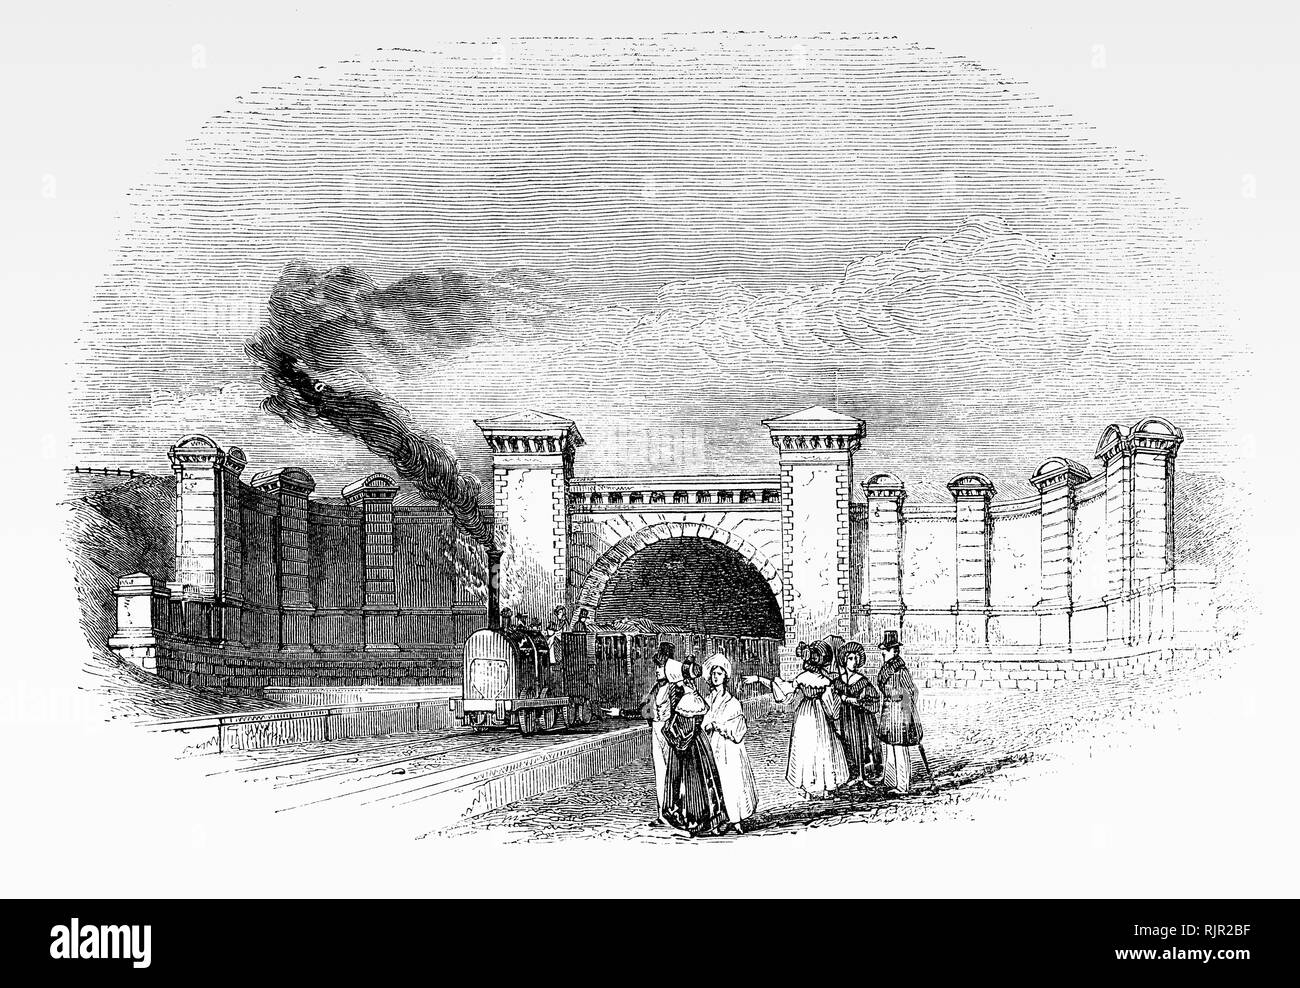 El túnel de ferrocarril en Primrose Hill, cerca de la estación de ferrocarril, en el distrito londinense de Camden, Londres, Inglaterra. Fue inaugurado el 5 de mayo de 1855 como parte del primer ferrocarril interurbano entre Londres y Birmingham (L&BR) planeado por George y Robert Stephenson. Foto de stock